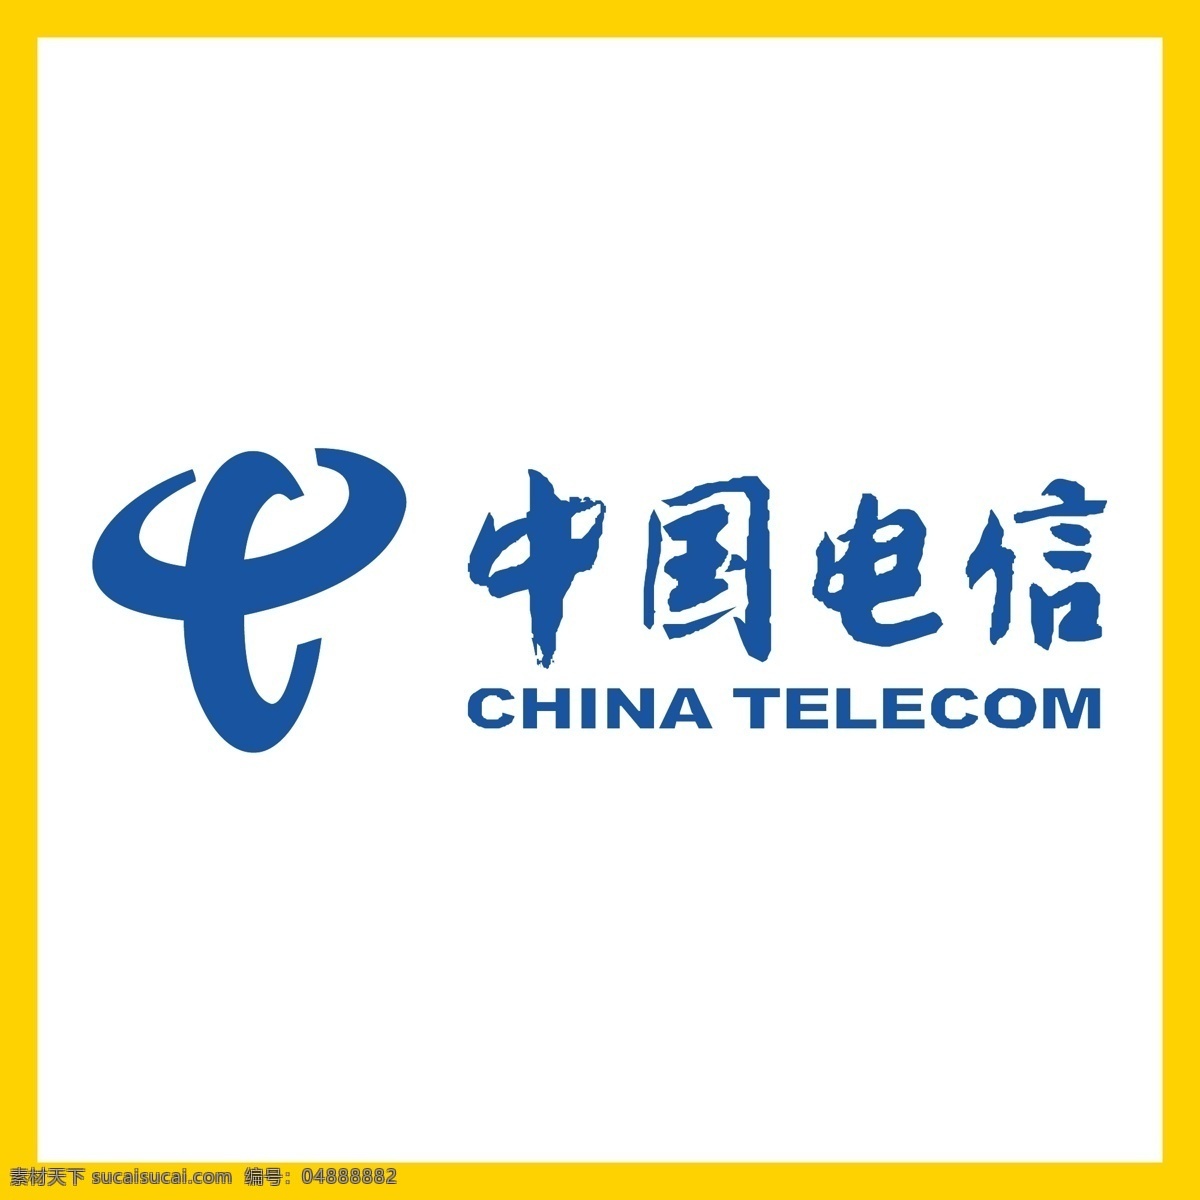 中国电信 宽带网络 光纤 上网冲浪 高清电视 logo 标志 矢量 vi logo设计